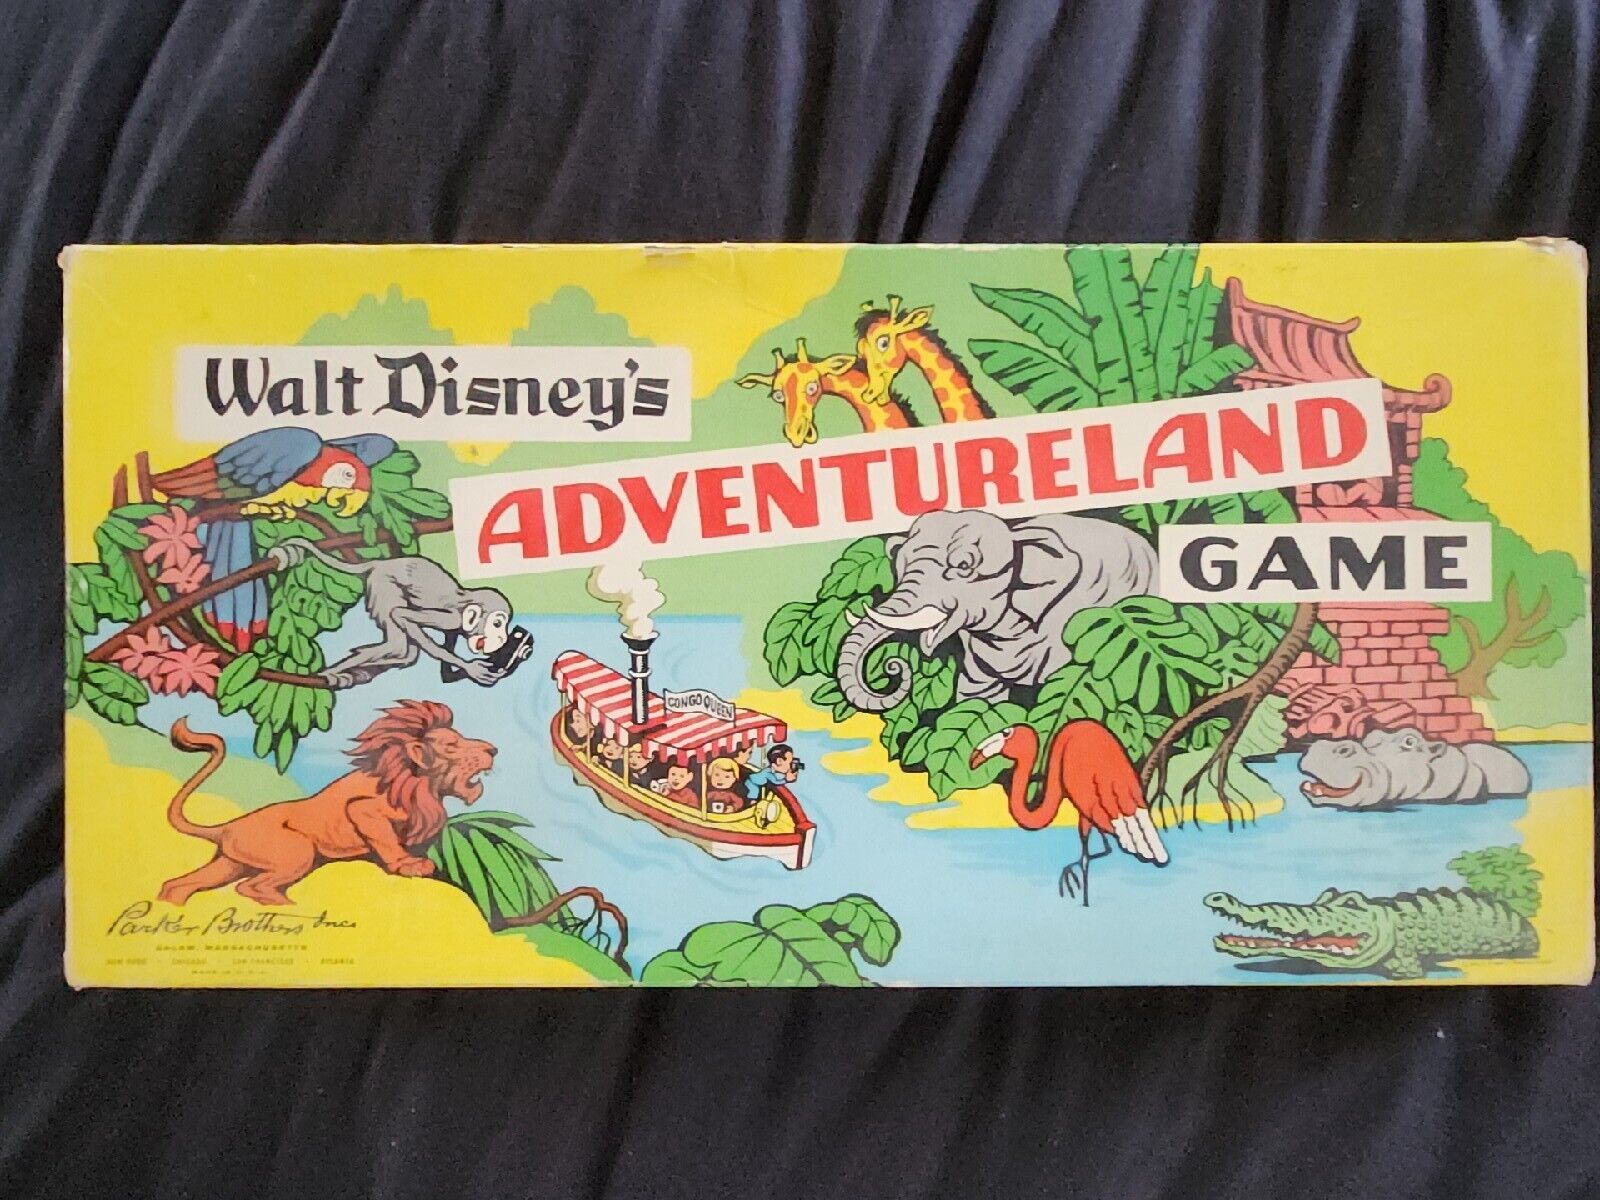 ORIGINAL 1956 Walt Disney's Adventureland Game Vintage Board Game NOT RE-ISSUE 